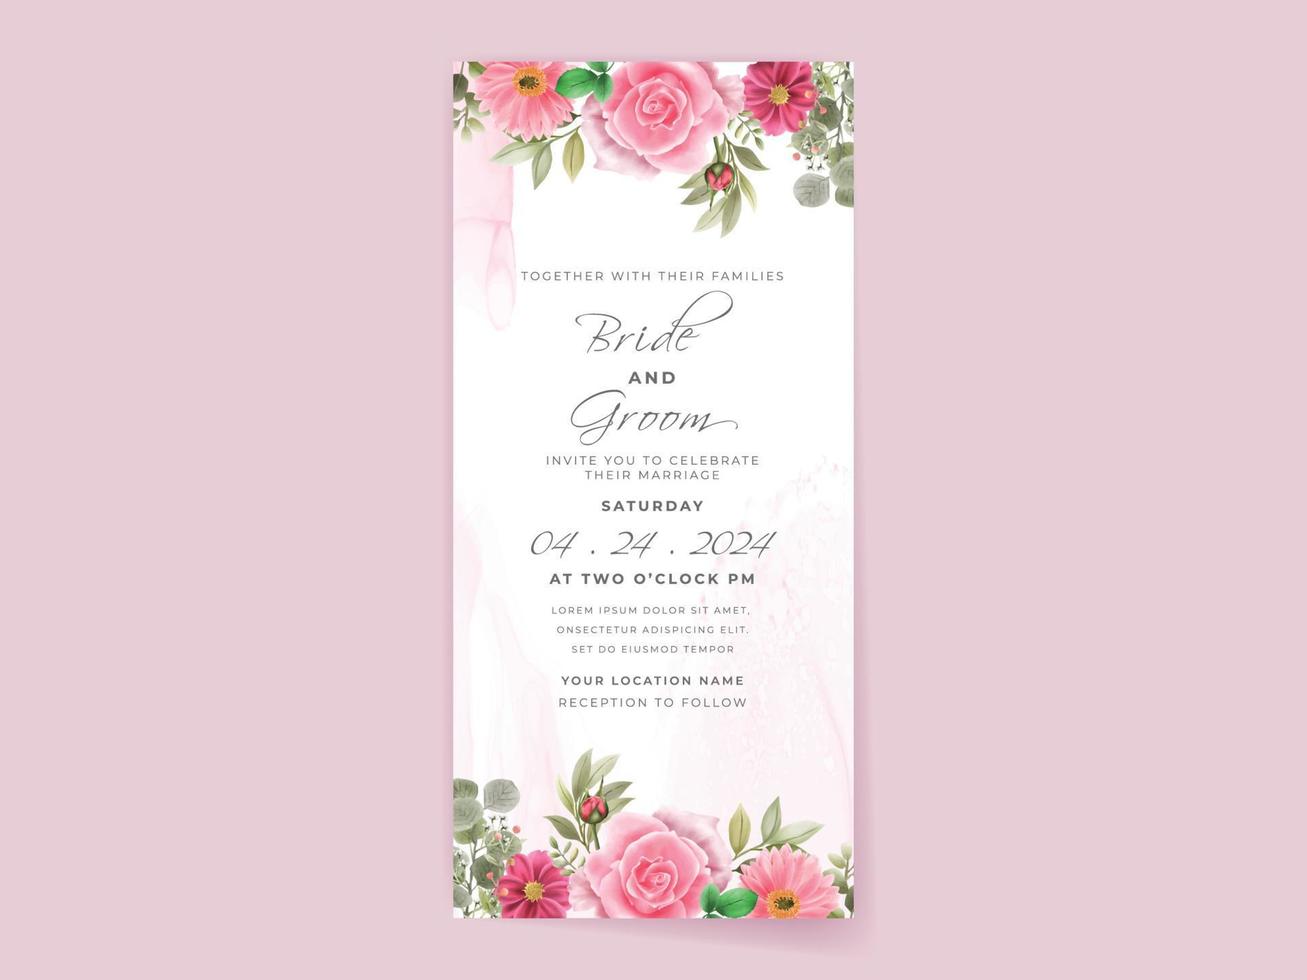 carte d'invitation de mariage avec un beau design de fleurs roses vecteur